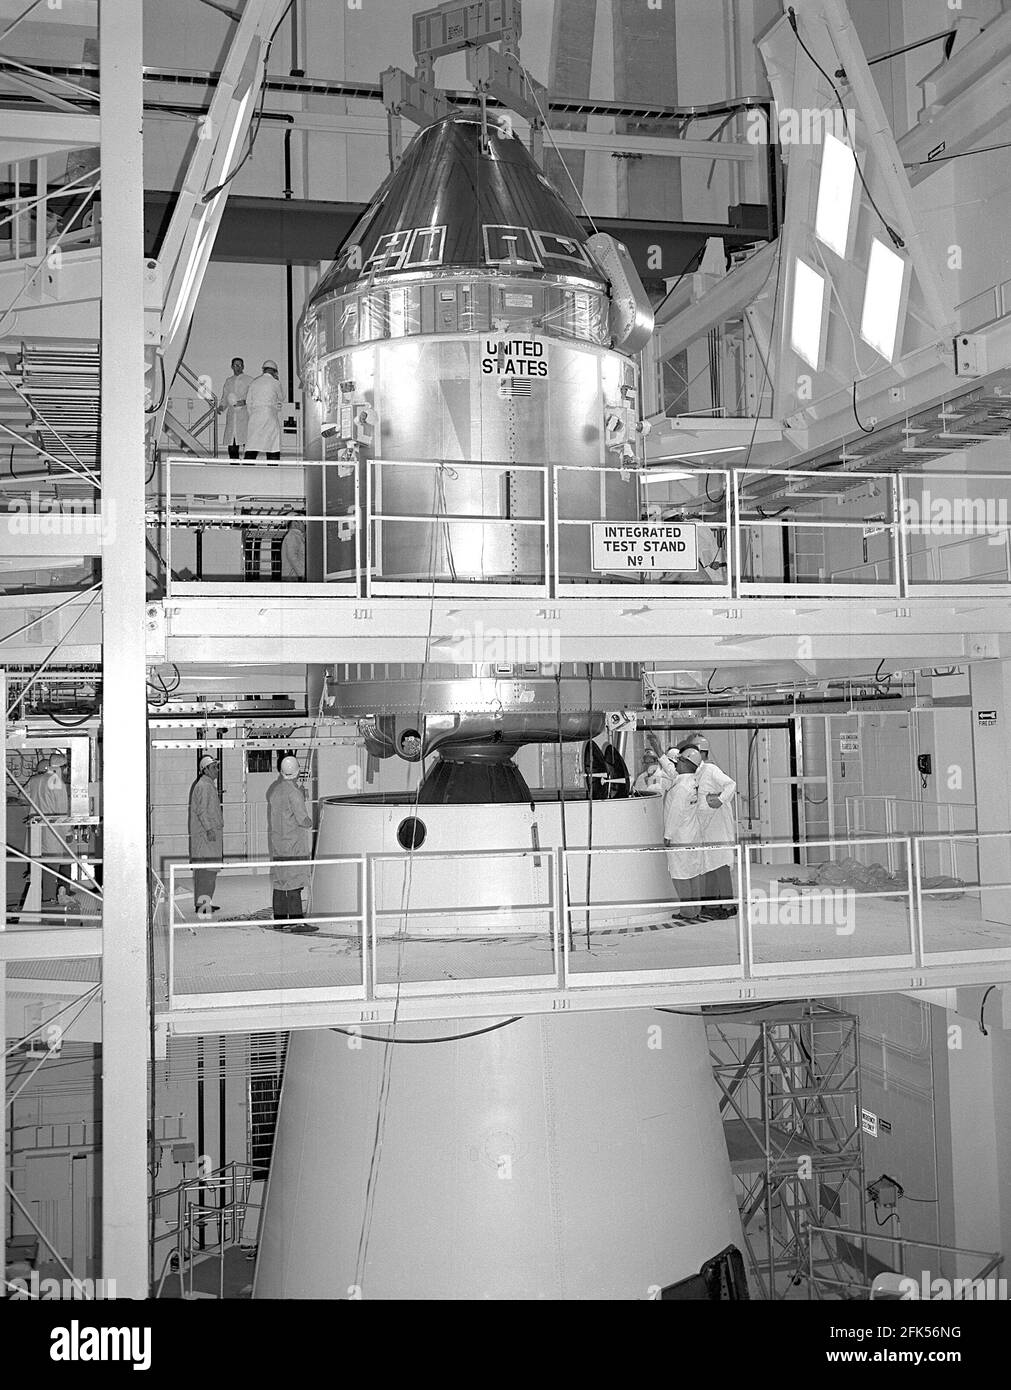 Cape Canaveral, FL - (FILE) -- il modulo di comando/servizio Apollo 11 (CSM) sono stati accoppiati all'adattatore del modulo Lunar Saturn V nell'edificio di assemblaggio del veicolo presso il Kennedy Space Center il 11 aprile 1969.Credit: NASA via CNP. /MediaPunch Foto Stock